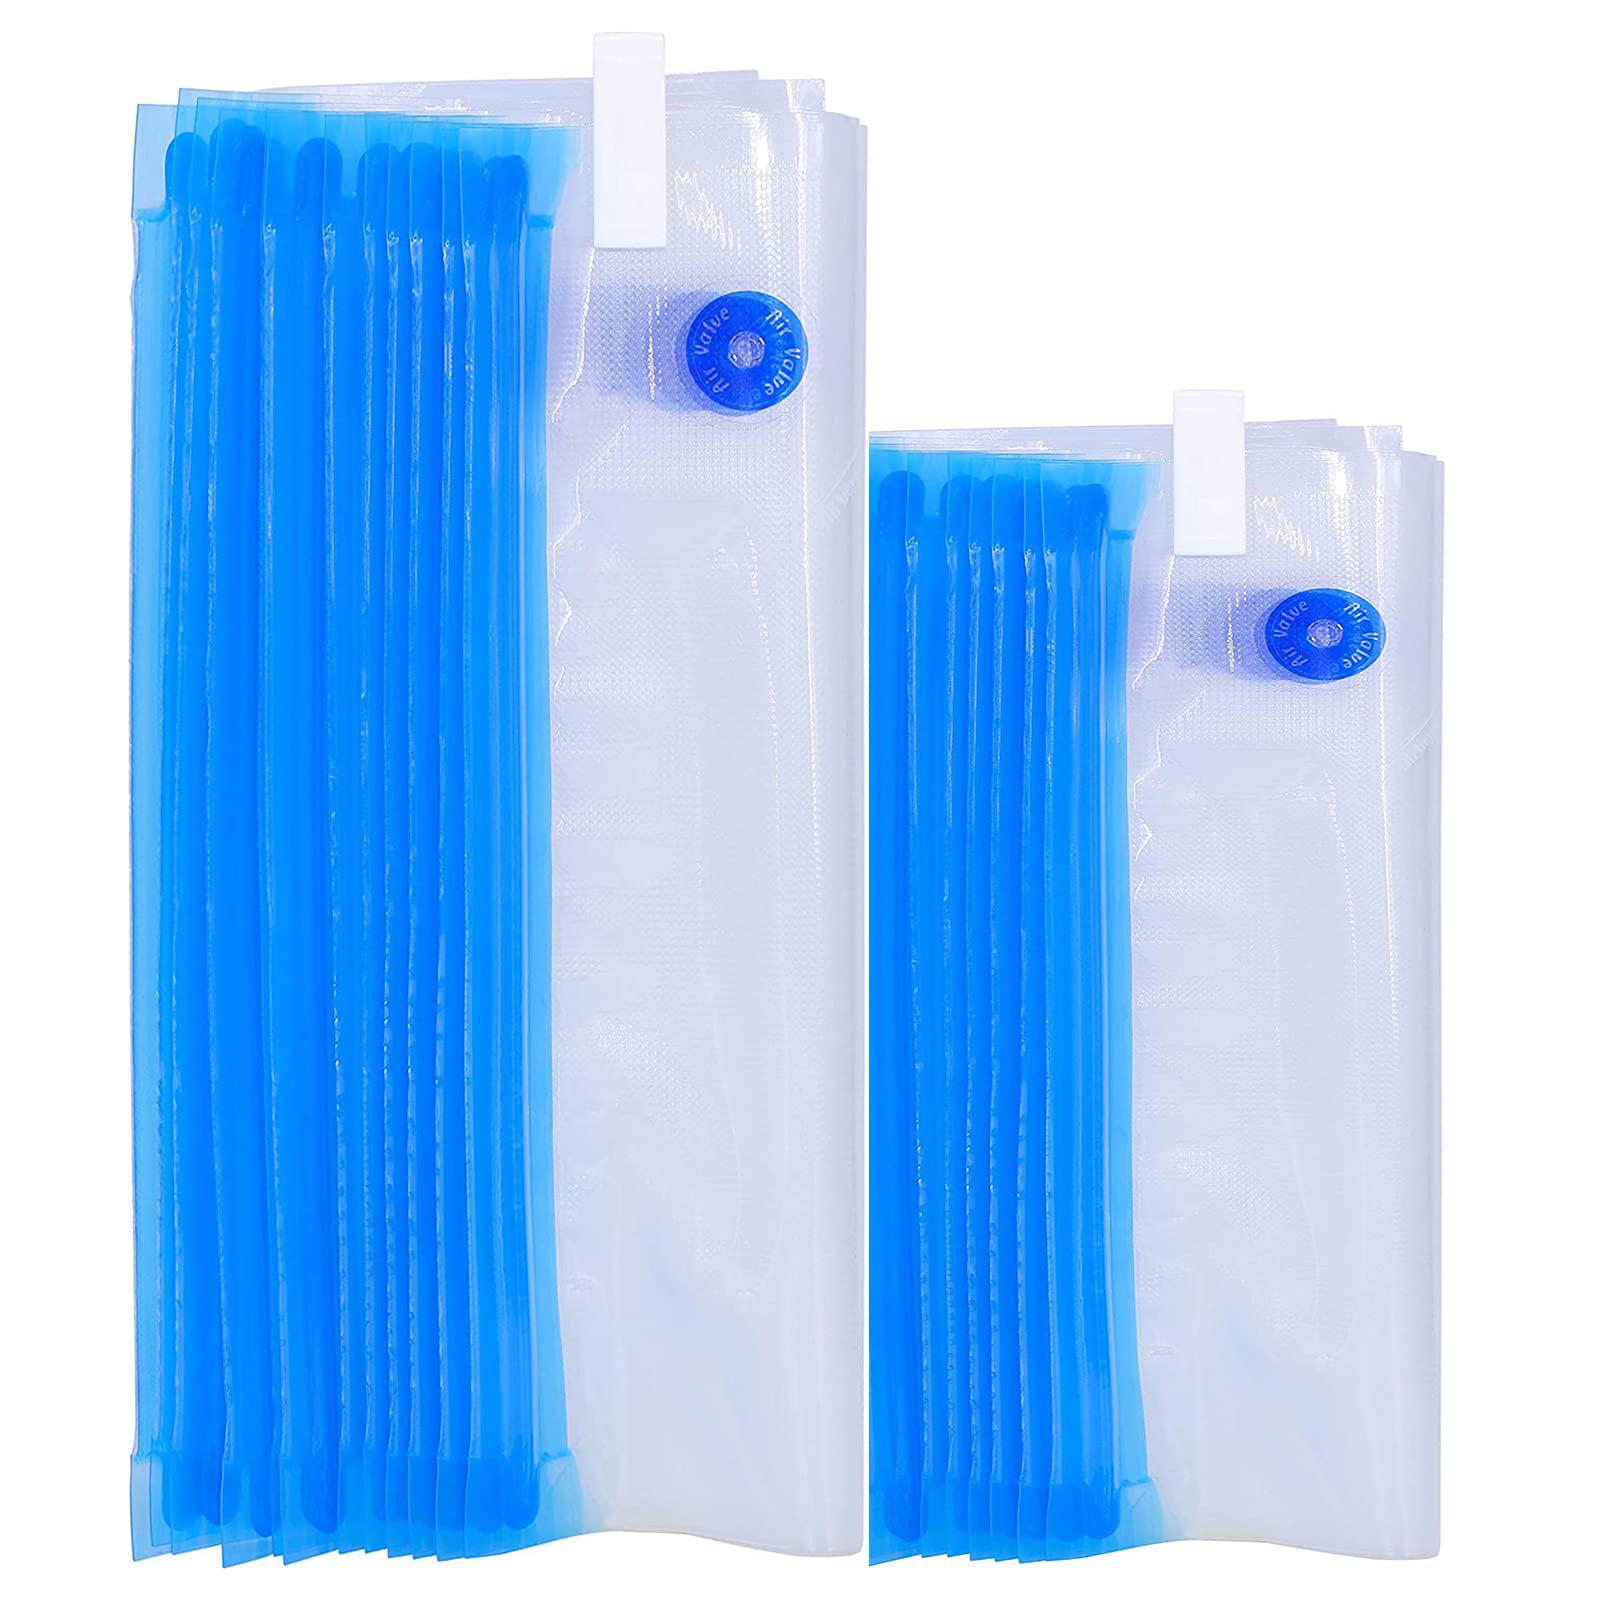 ROOZADE 20 pcs reusable vacuum sealer bags for food & snack storage, meal prep & sous vide, bpa free vacuum zipper bags, freezer & mi